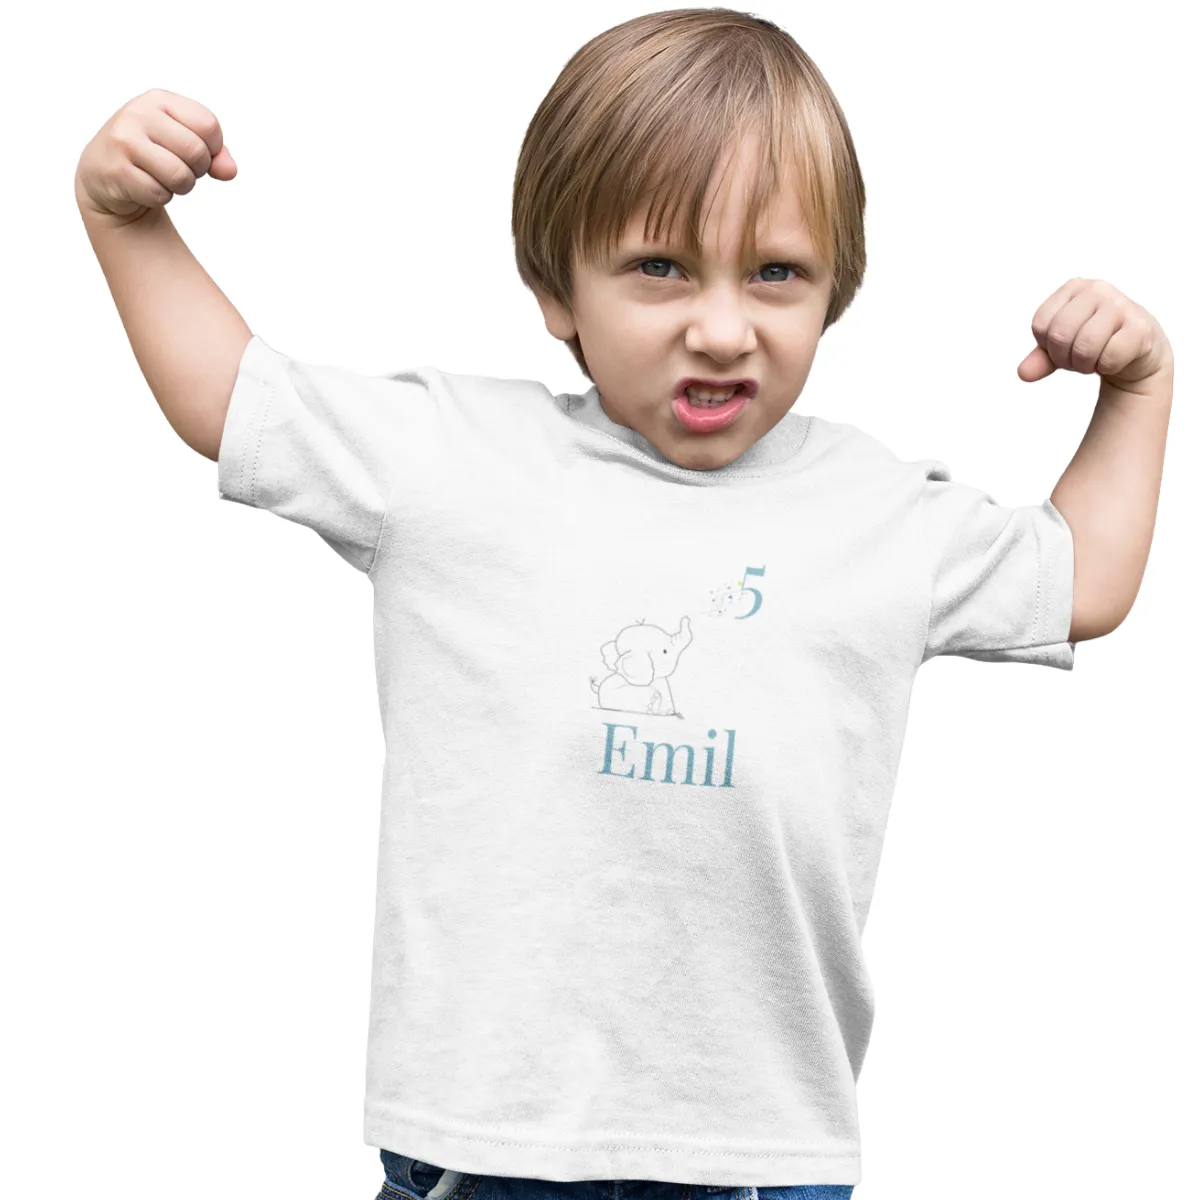 Kinder T-Shirt 5. Geburtstag mit Wunschname und Alter | Design Elefant | Baumwolle - Fair Trade | Kurzarm | Weiß